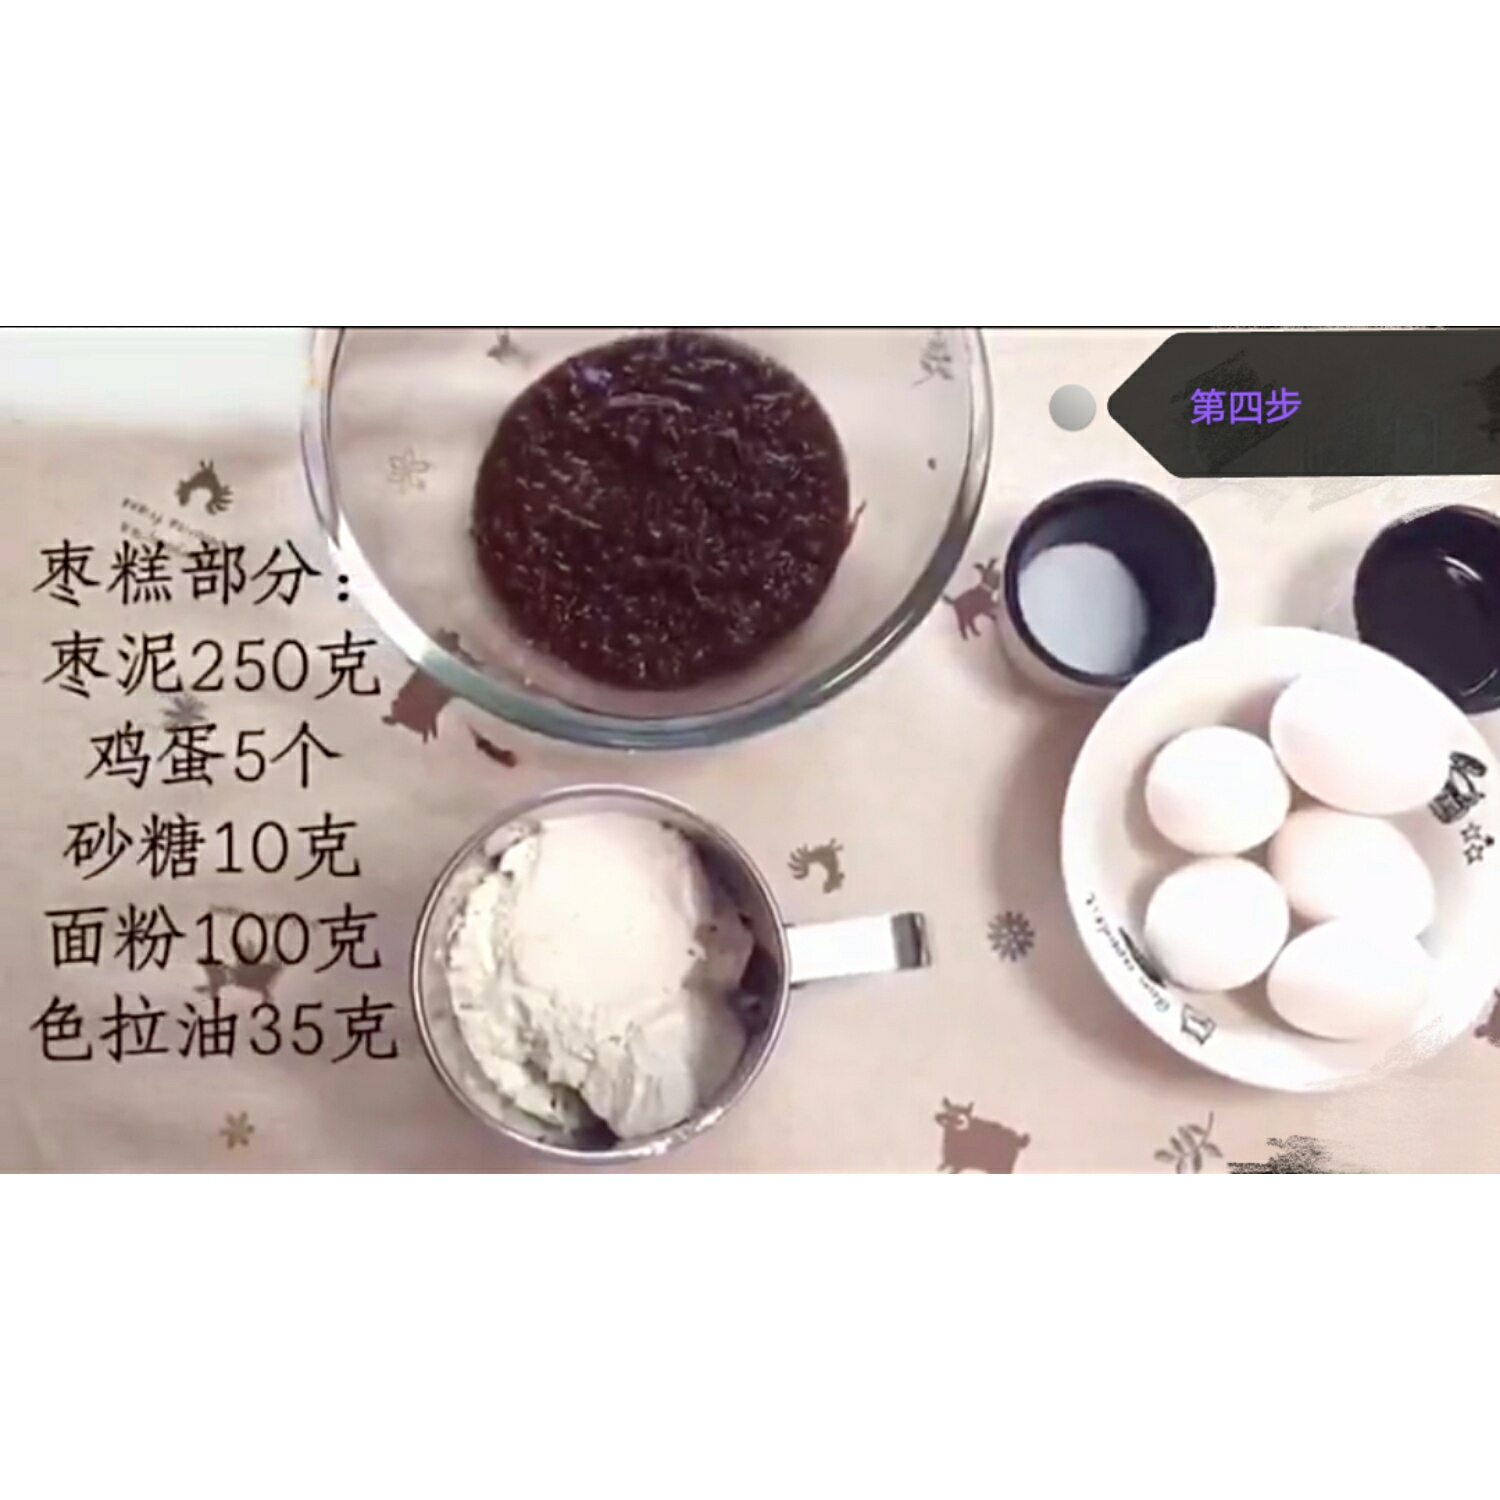 电饭锅枣泥蛋糕的做法 步骤4